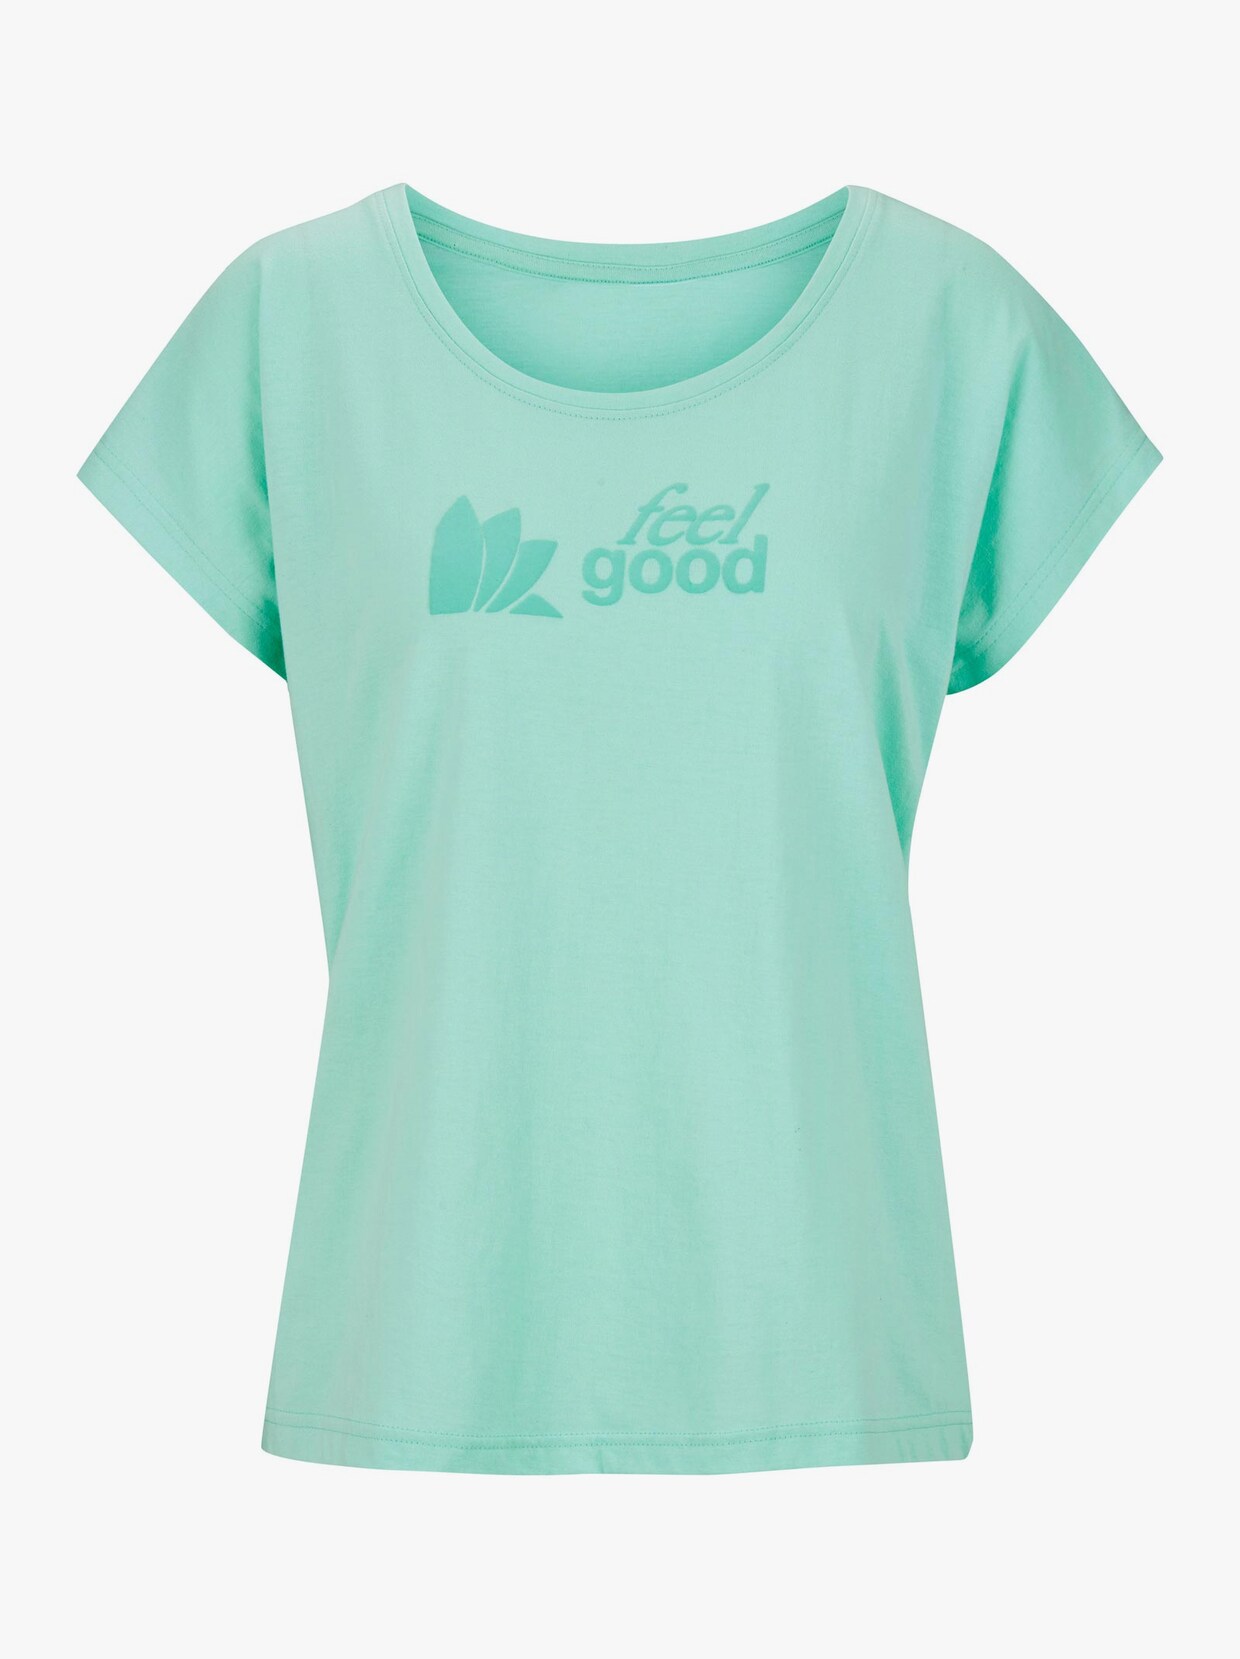 feel good Shirt - mint